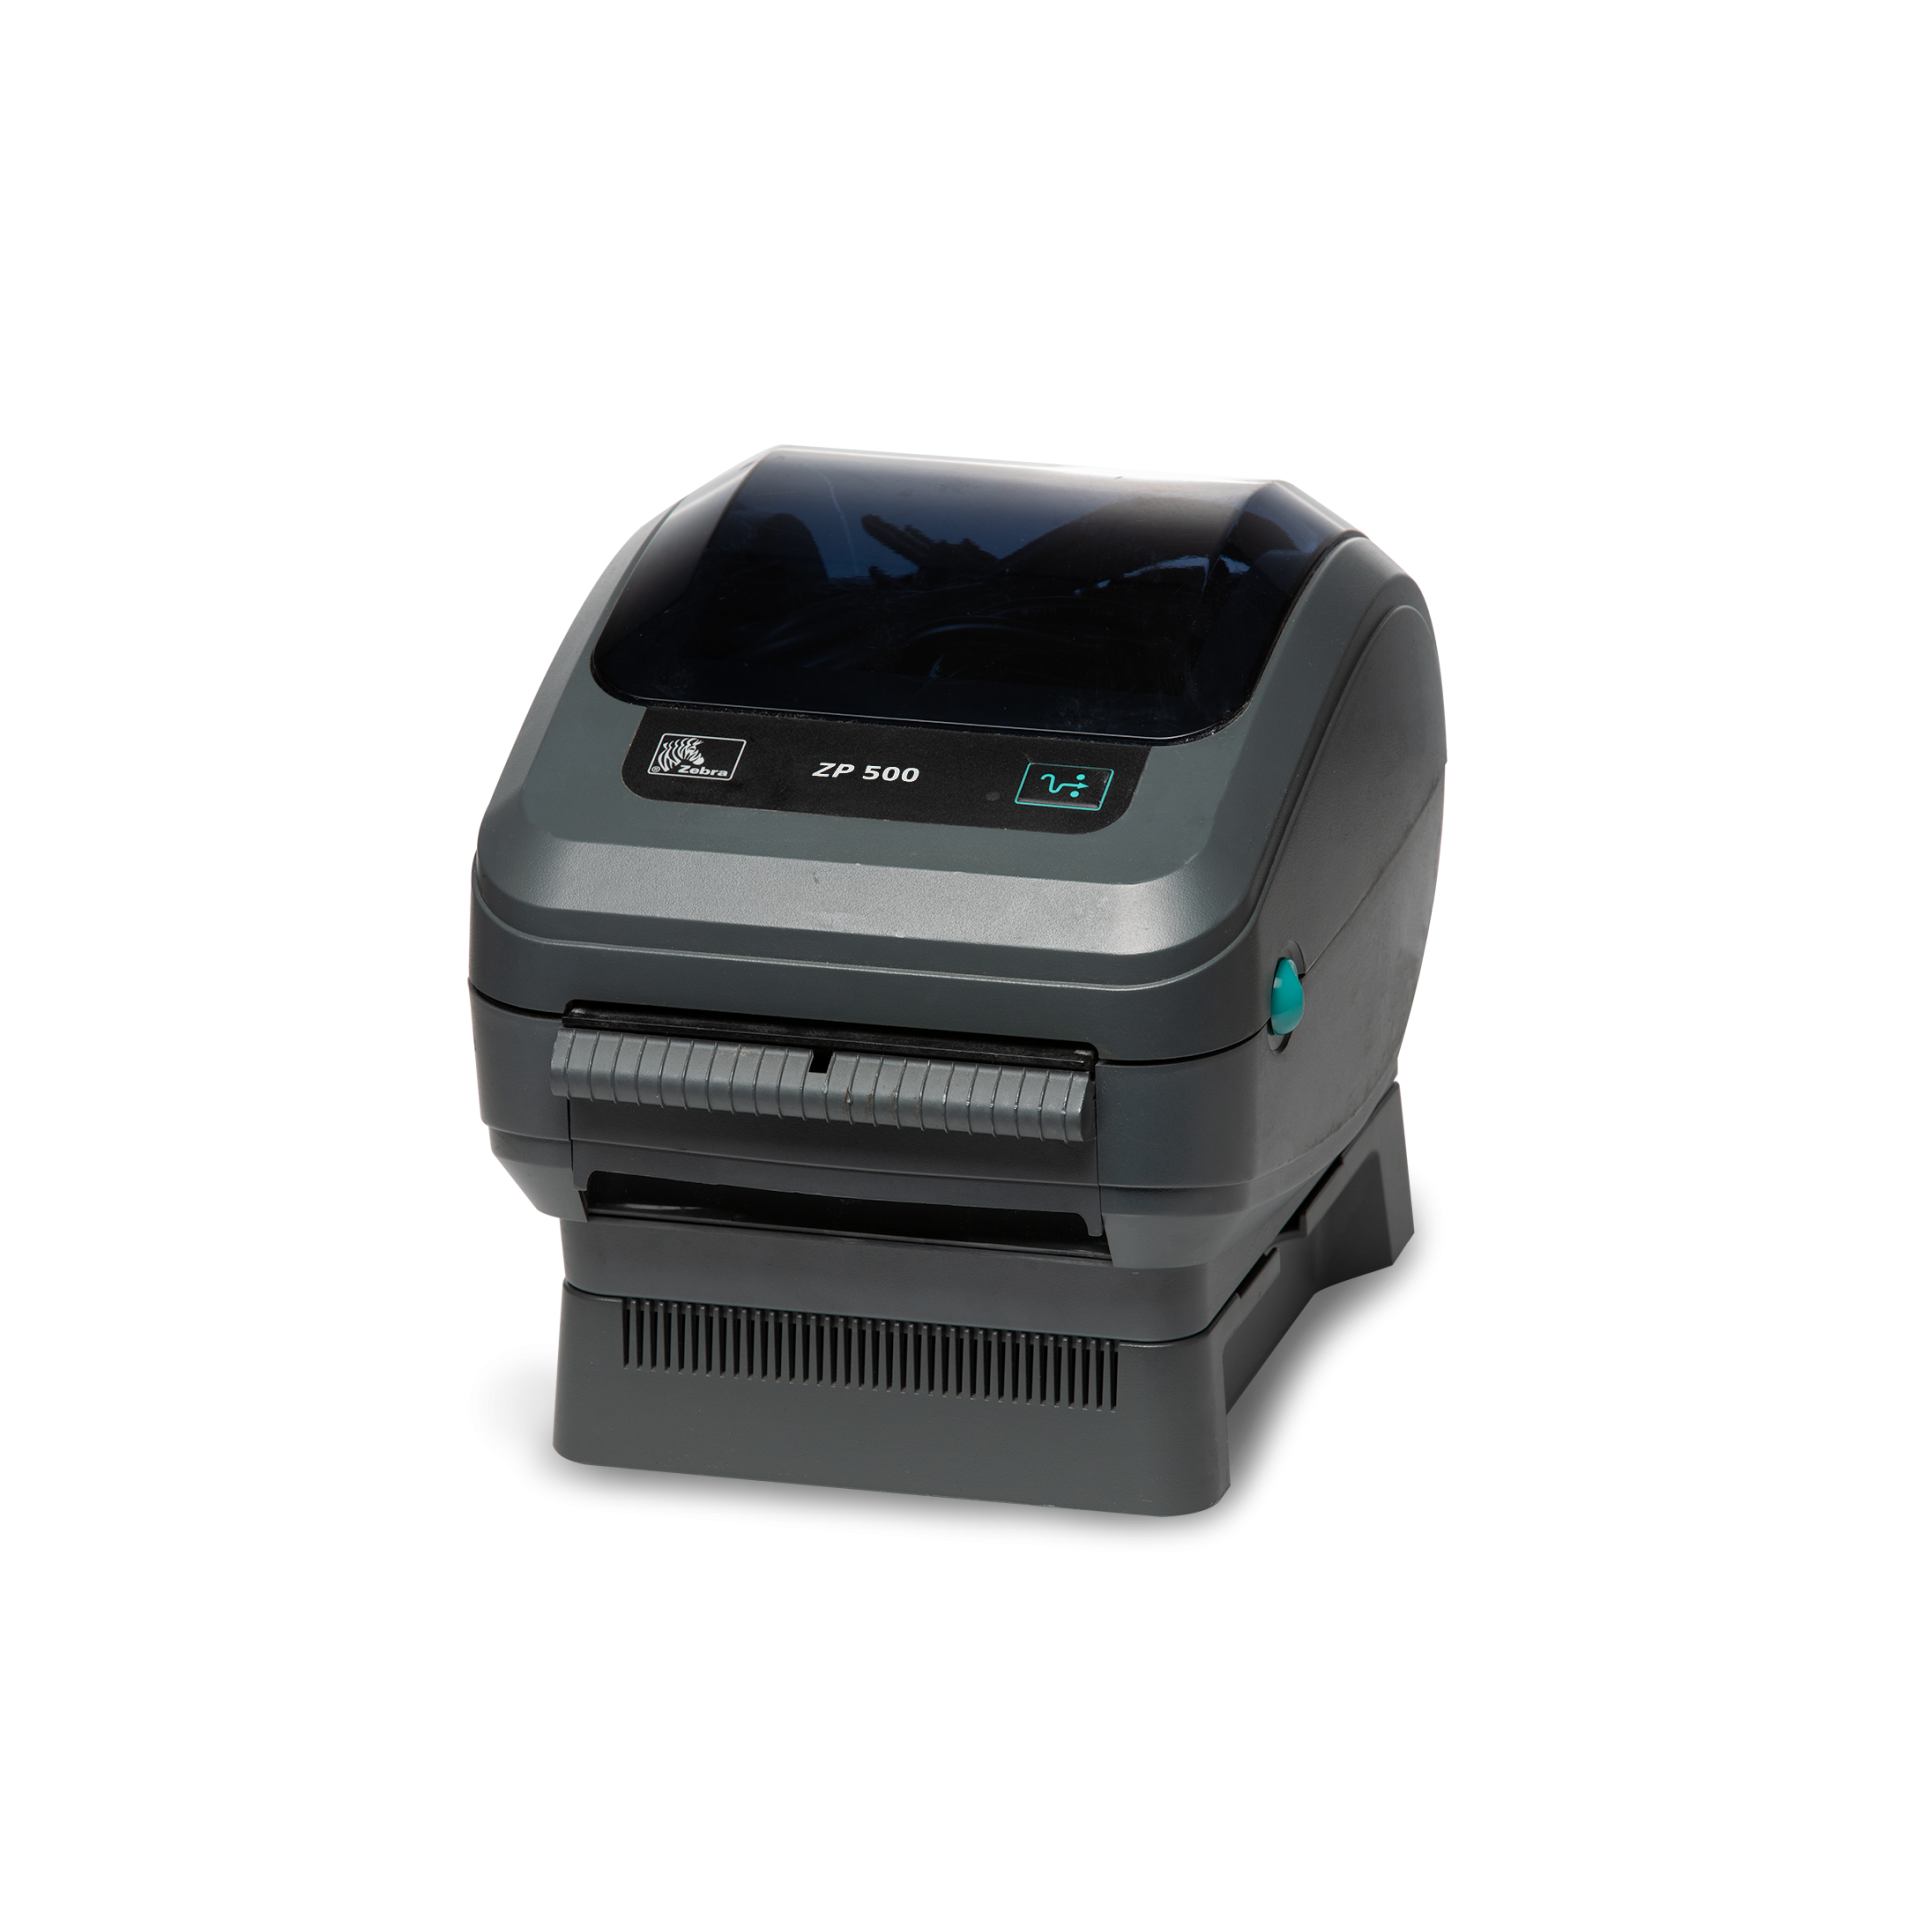 Zebra ZP 500 Parallel Model Direct Thermal Label Printer